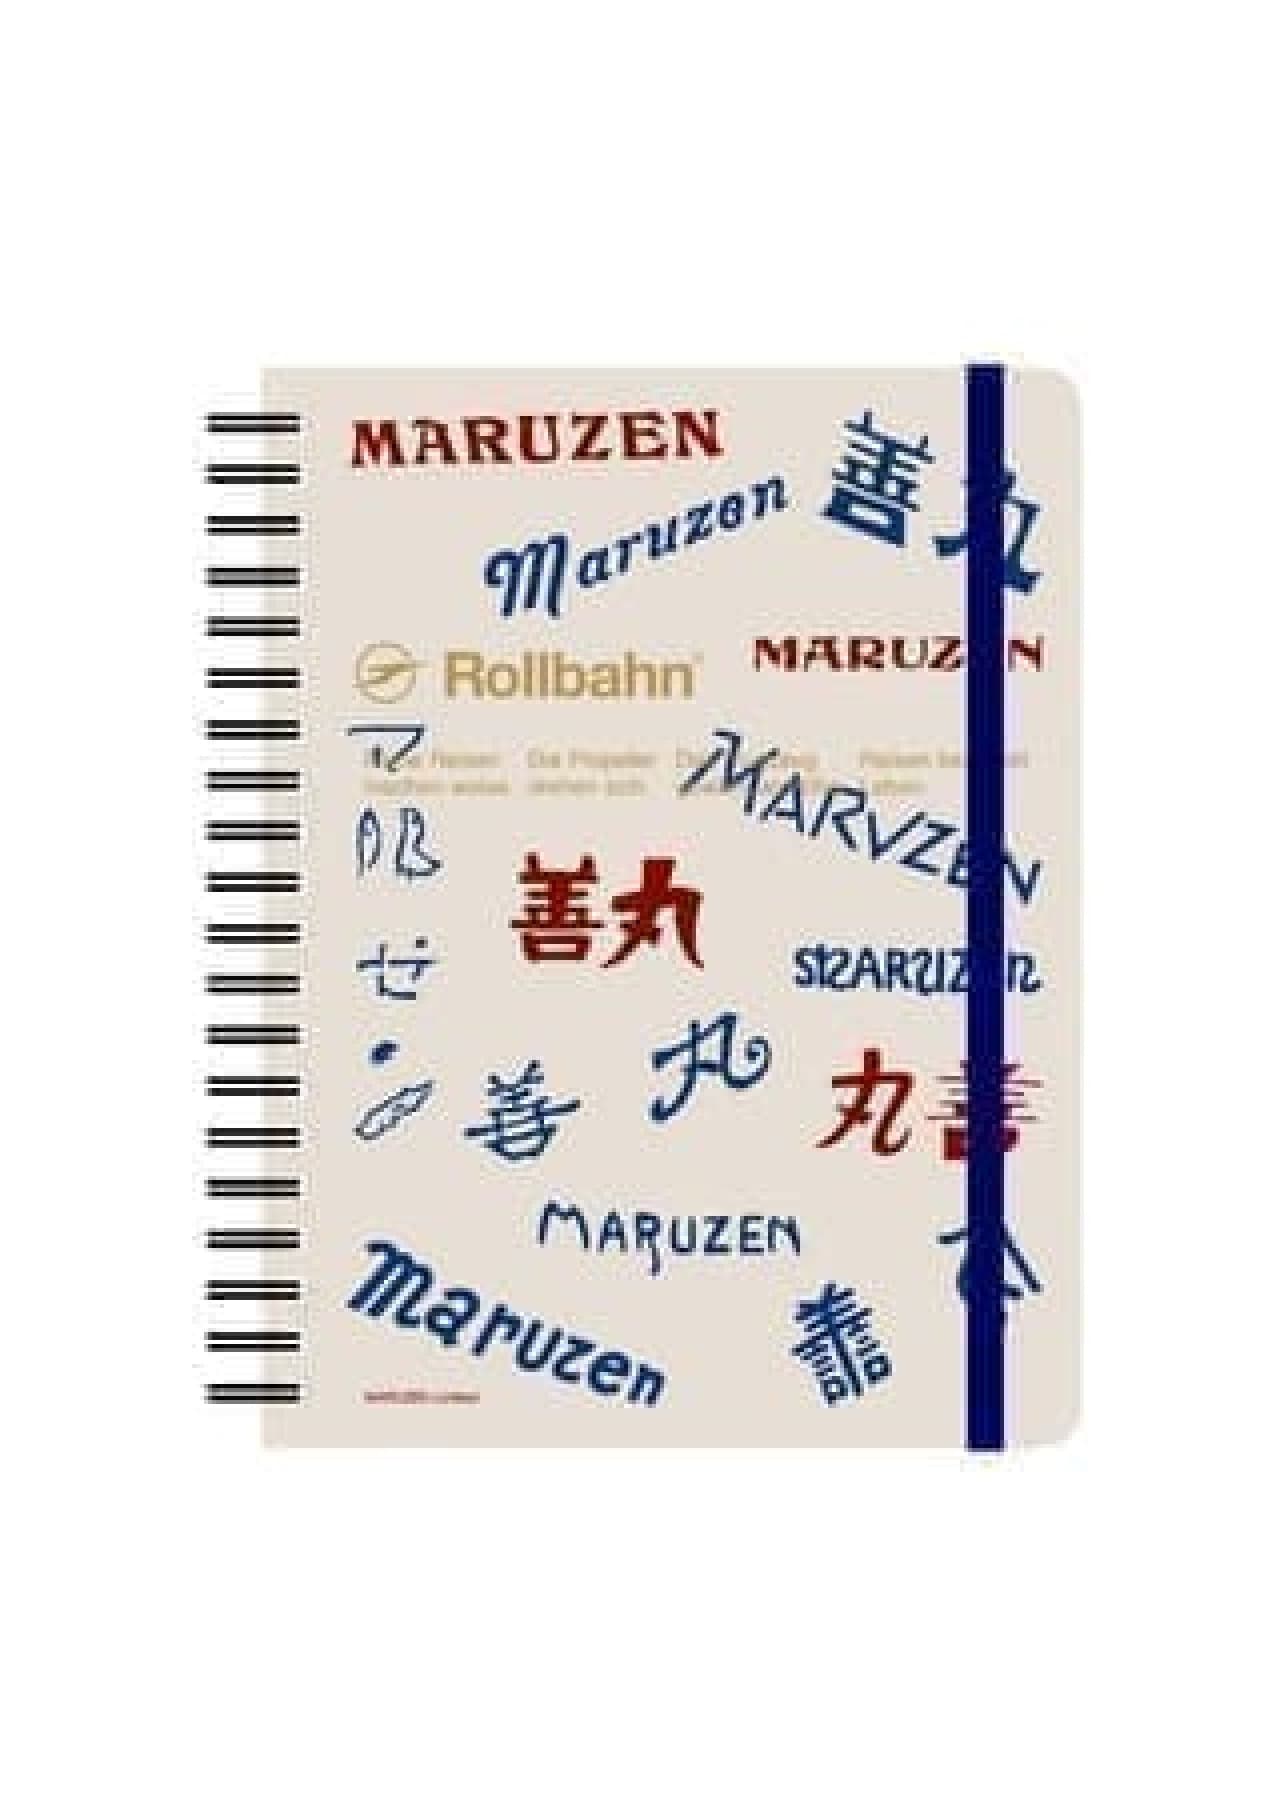 Maruzen original "Rolburn memo with pocket"